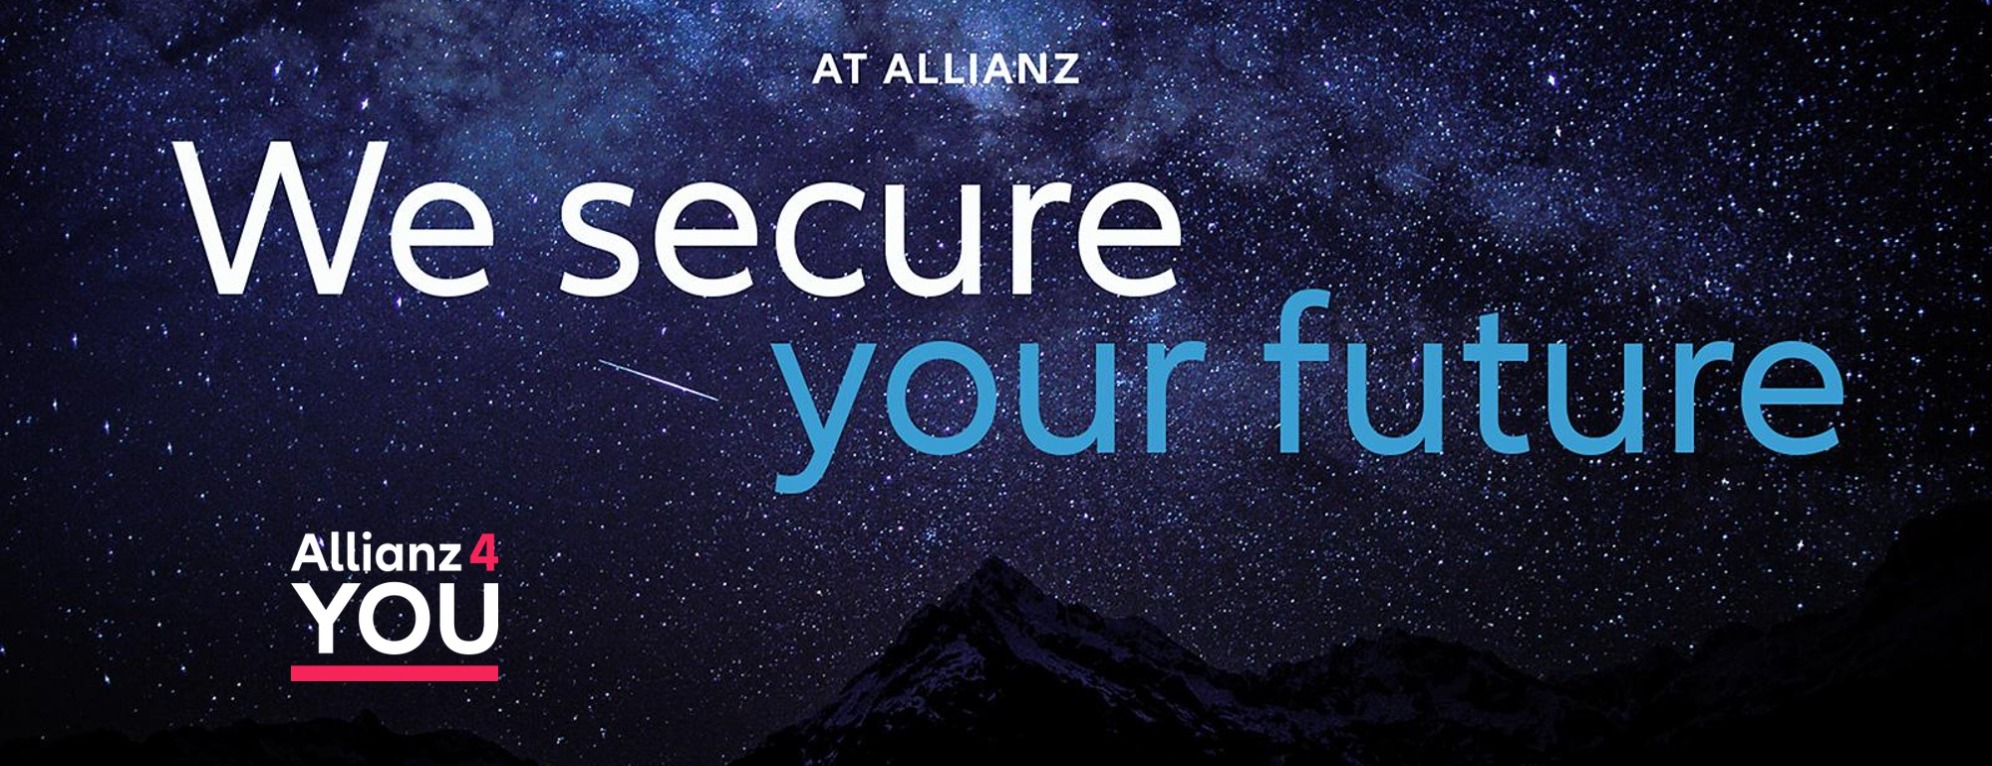 Allianz Versicherung Allianz 4 YOU Karlsruhe Karlsruhe - Willkommen Future secure 